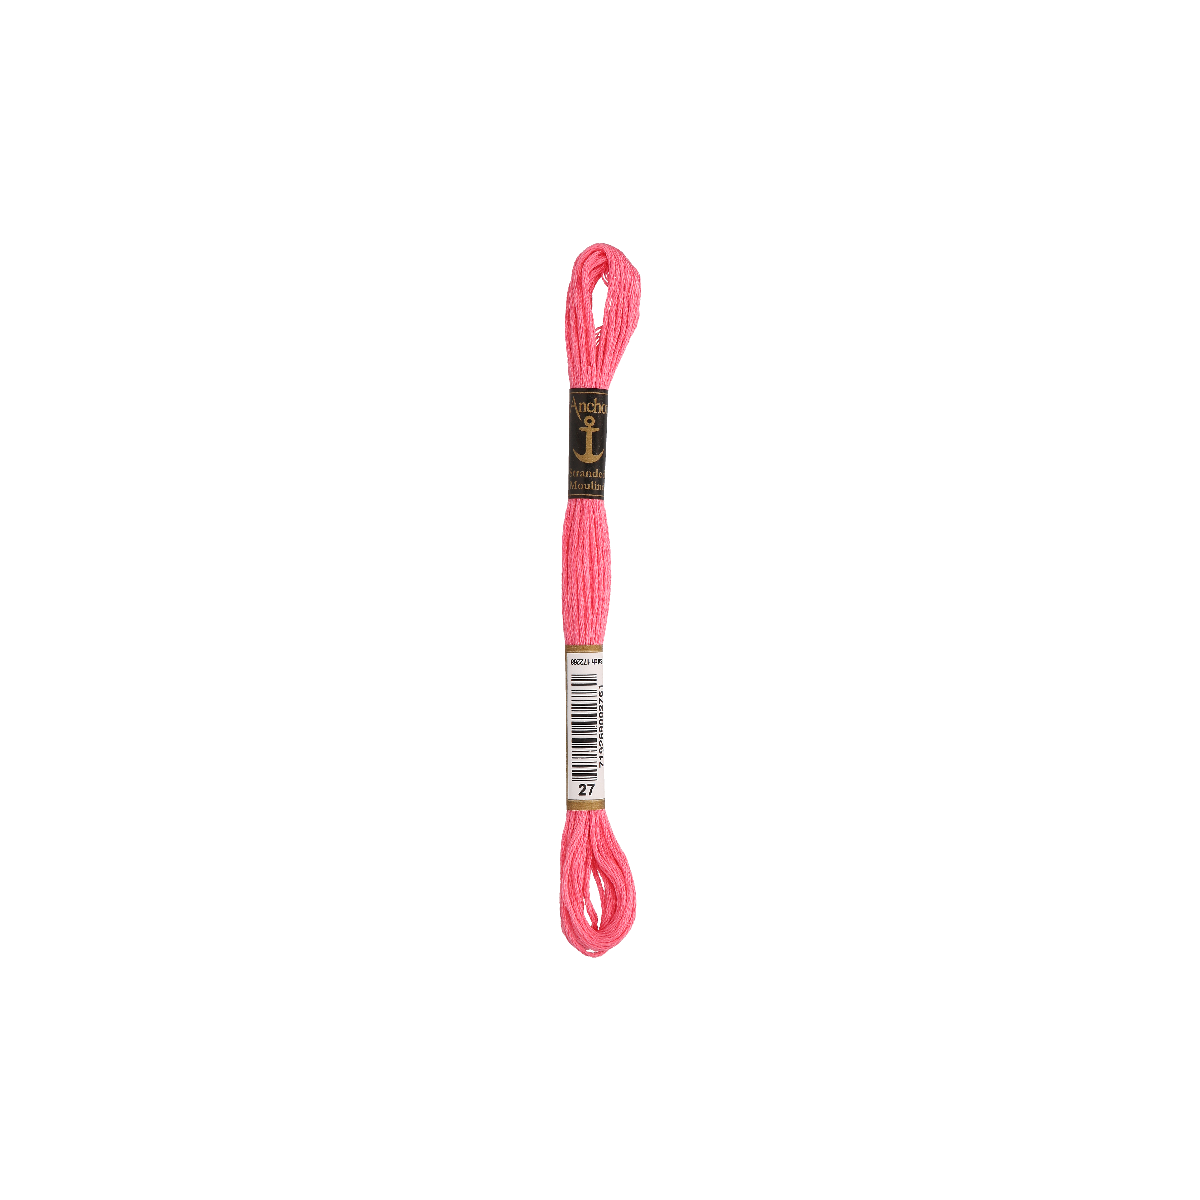 Anchor Sticktwist 8m, roze, katoen, kleur 27, 6-draads